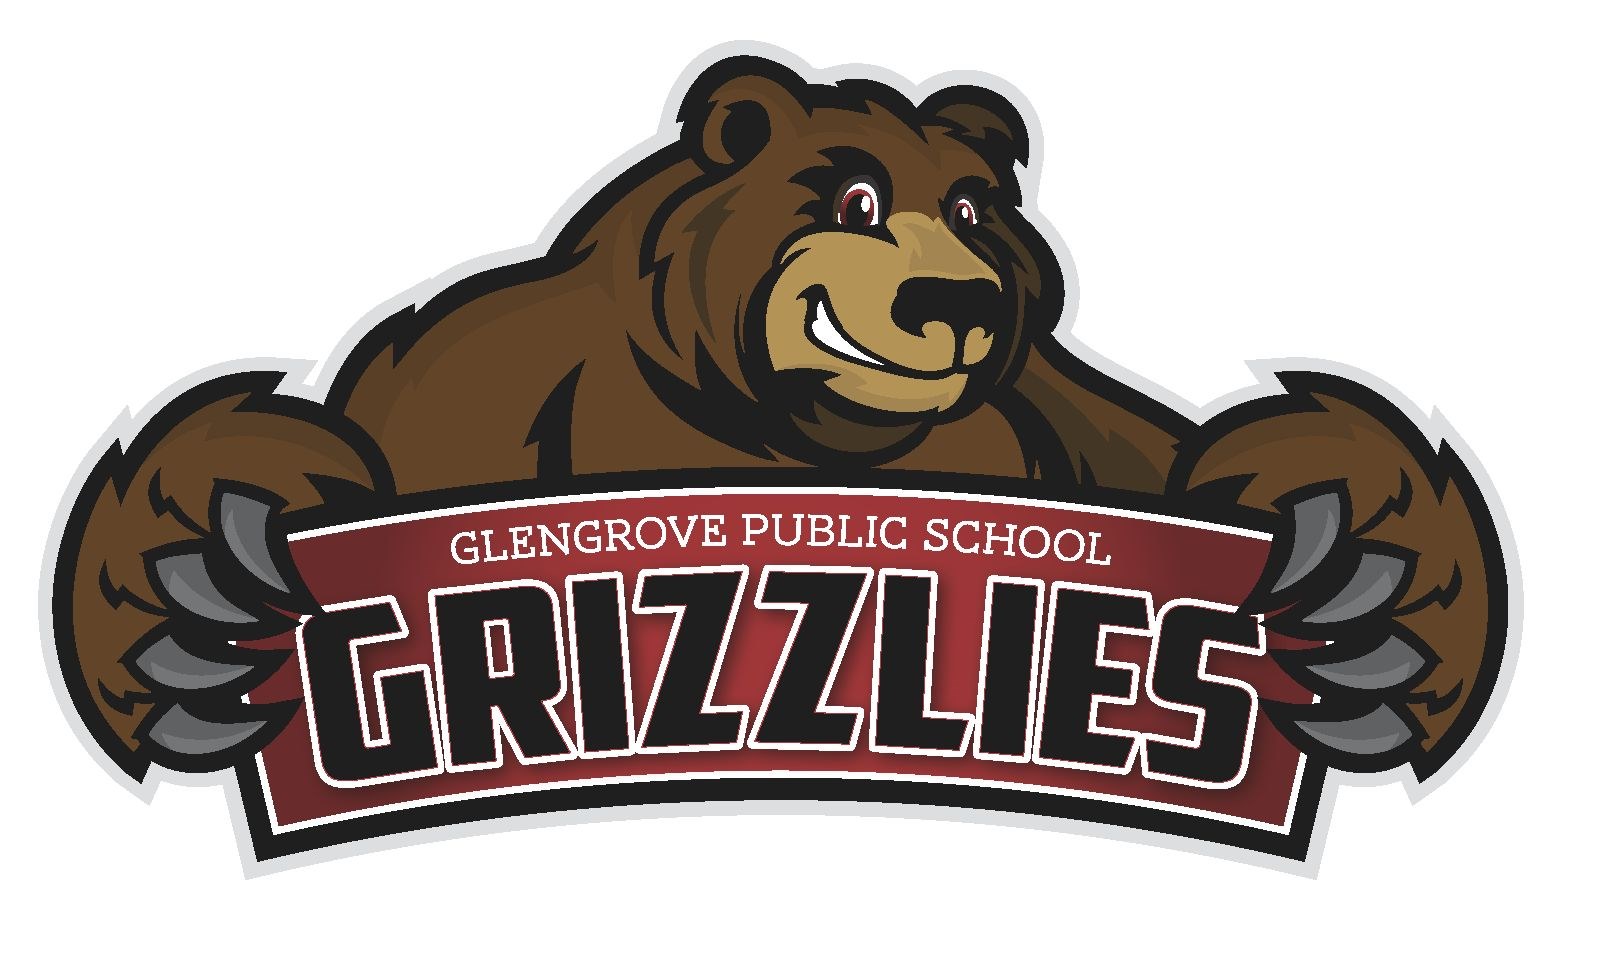 Автосервис медведь. Медведь логотип. Бурый медведь логотип. Медведь Гризли логотип. Изображение медведя для логотипа.